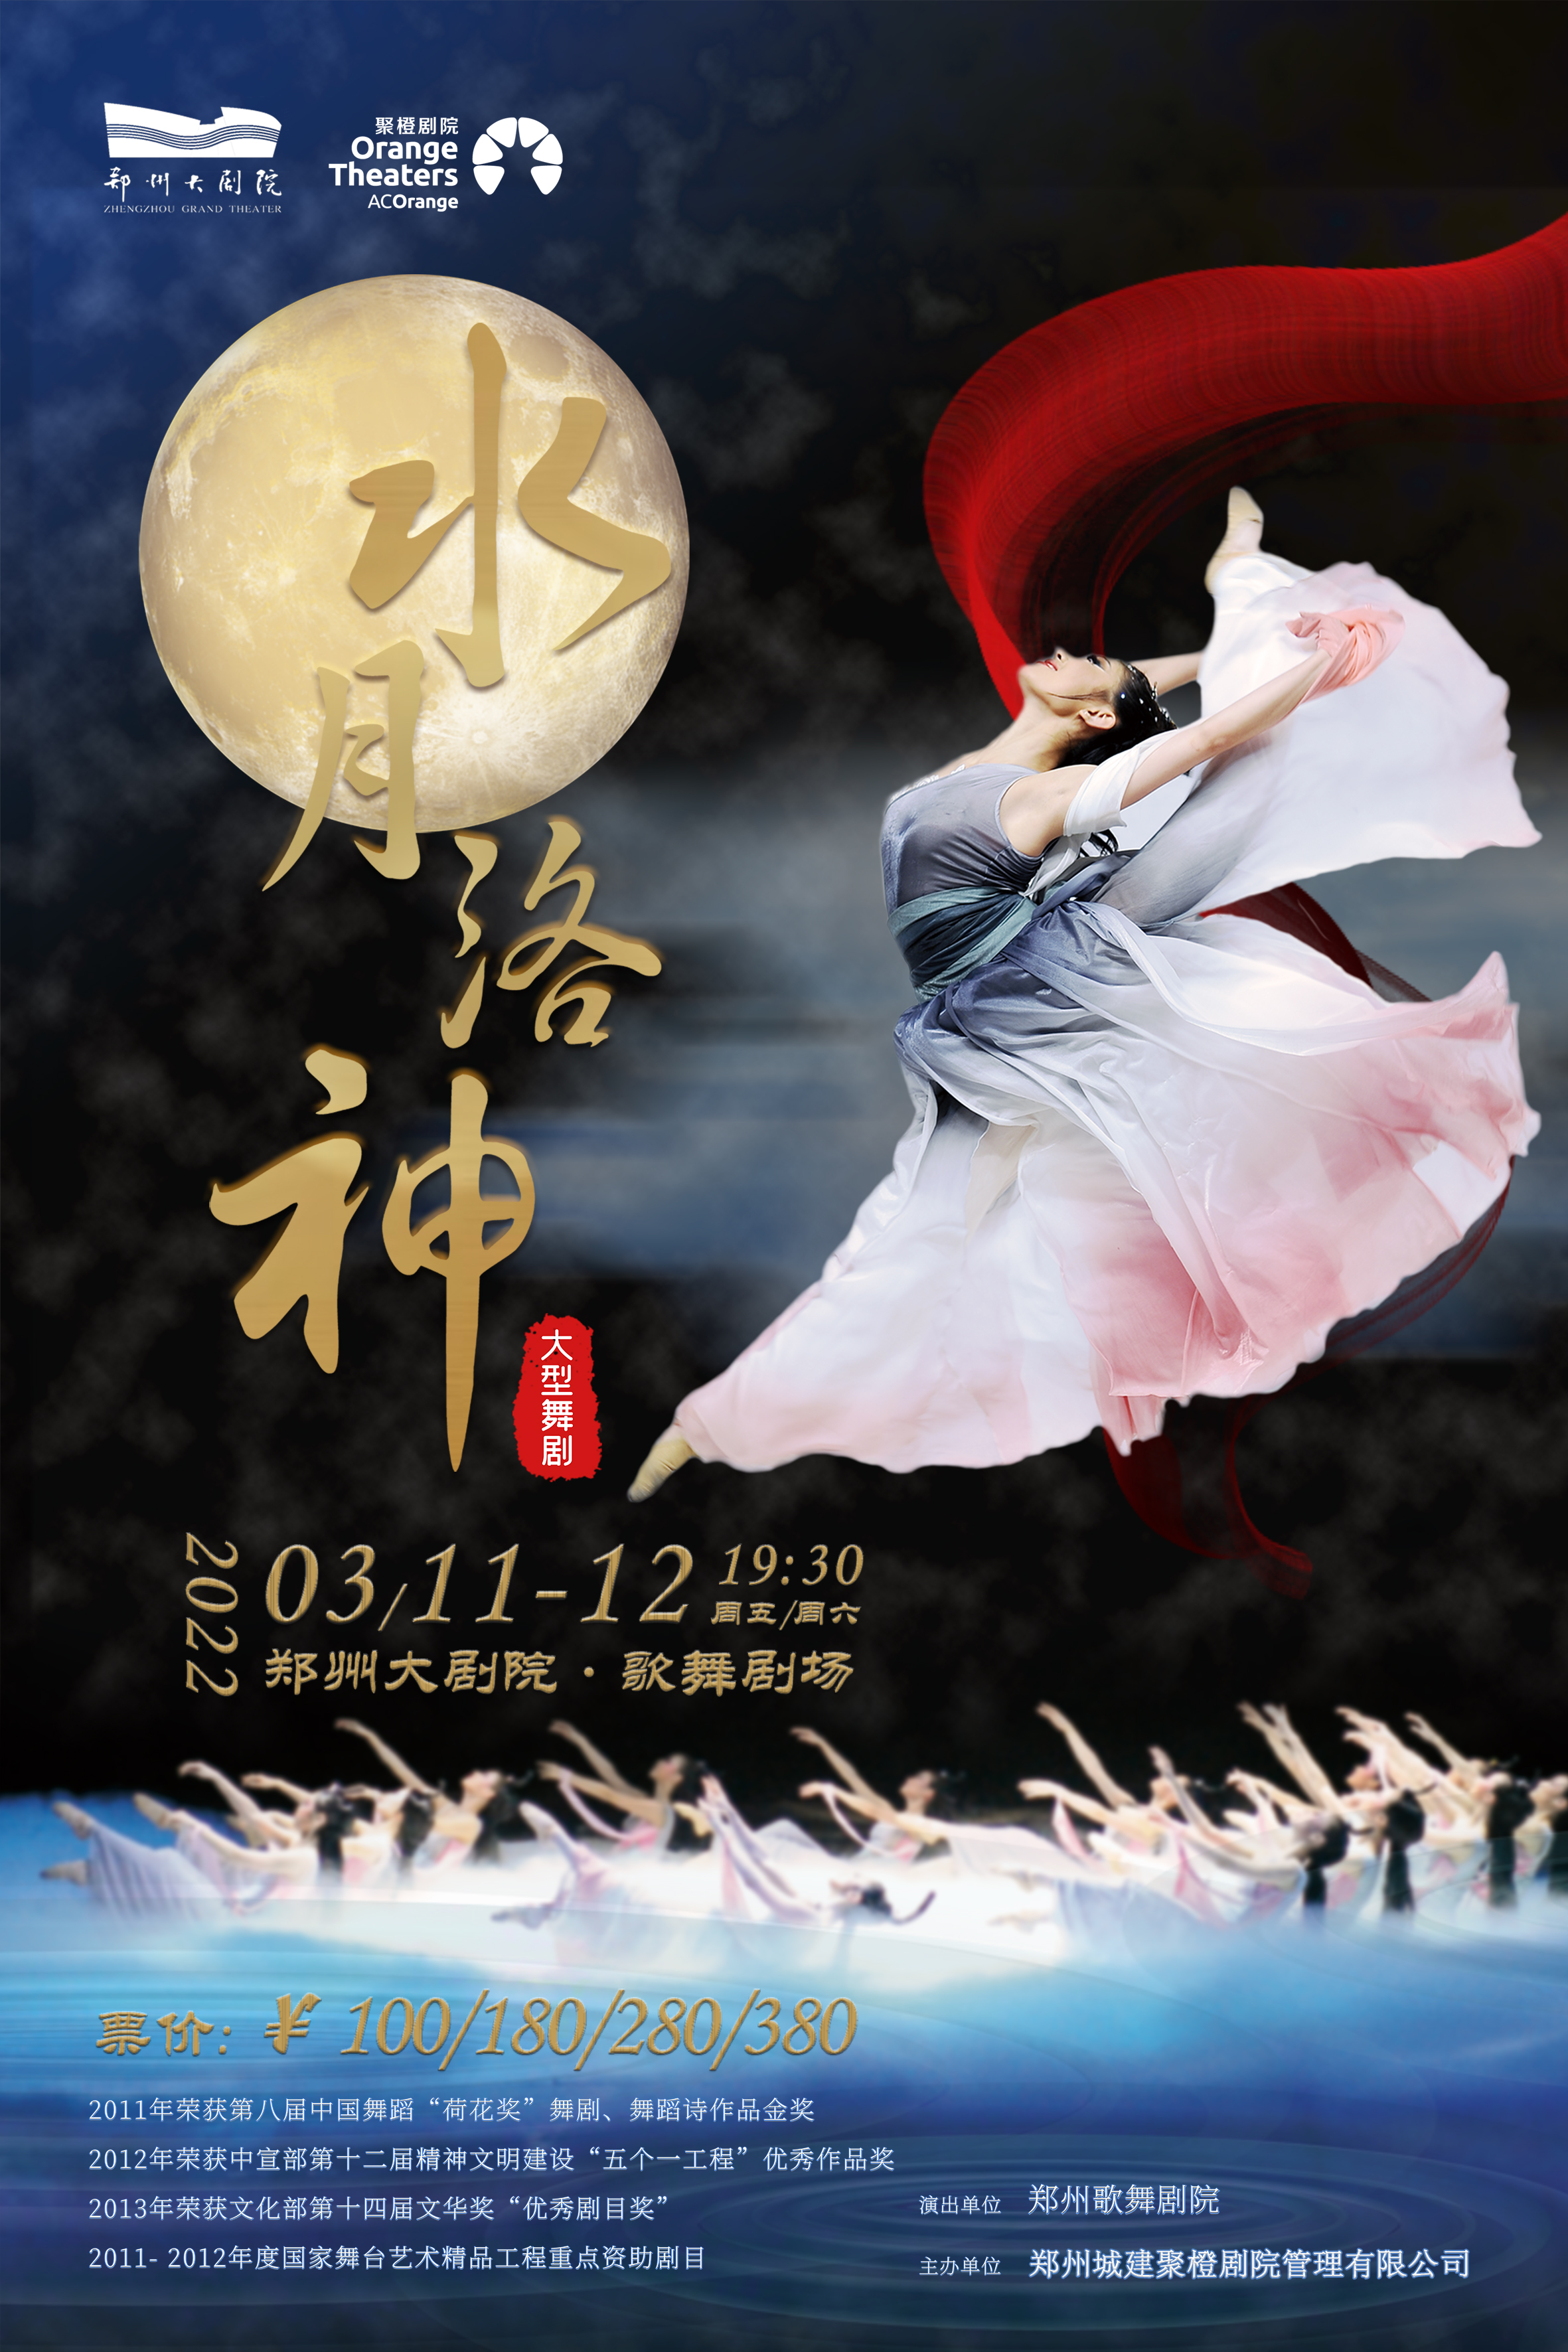 郑州大剧院打造2022“文化中原•舞动郑州”舞蹈展演系列剧目 5部大型舞剧将与市民见面